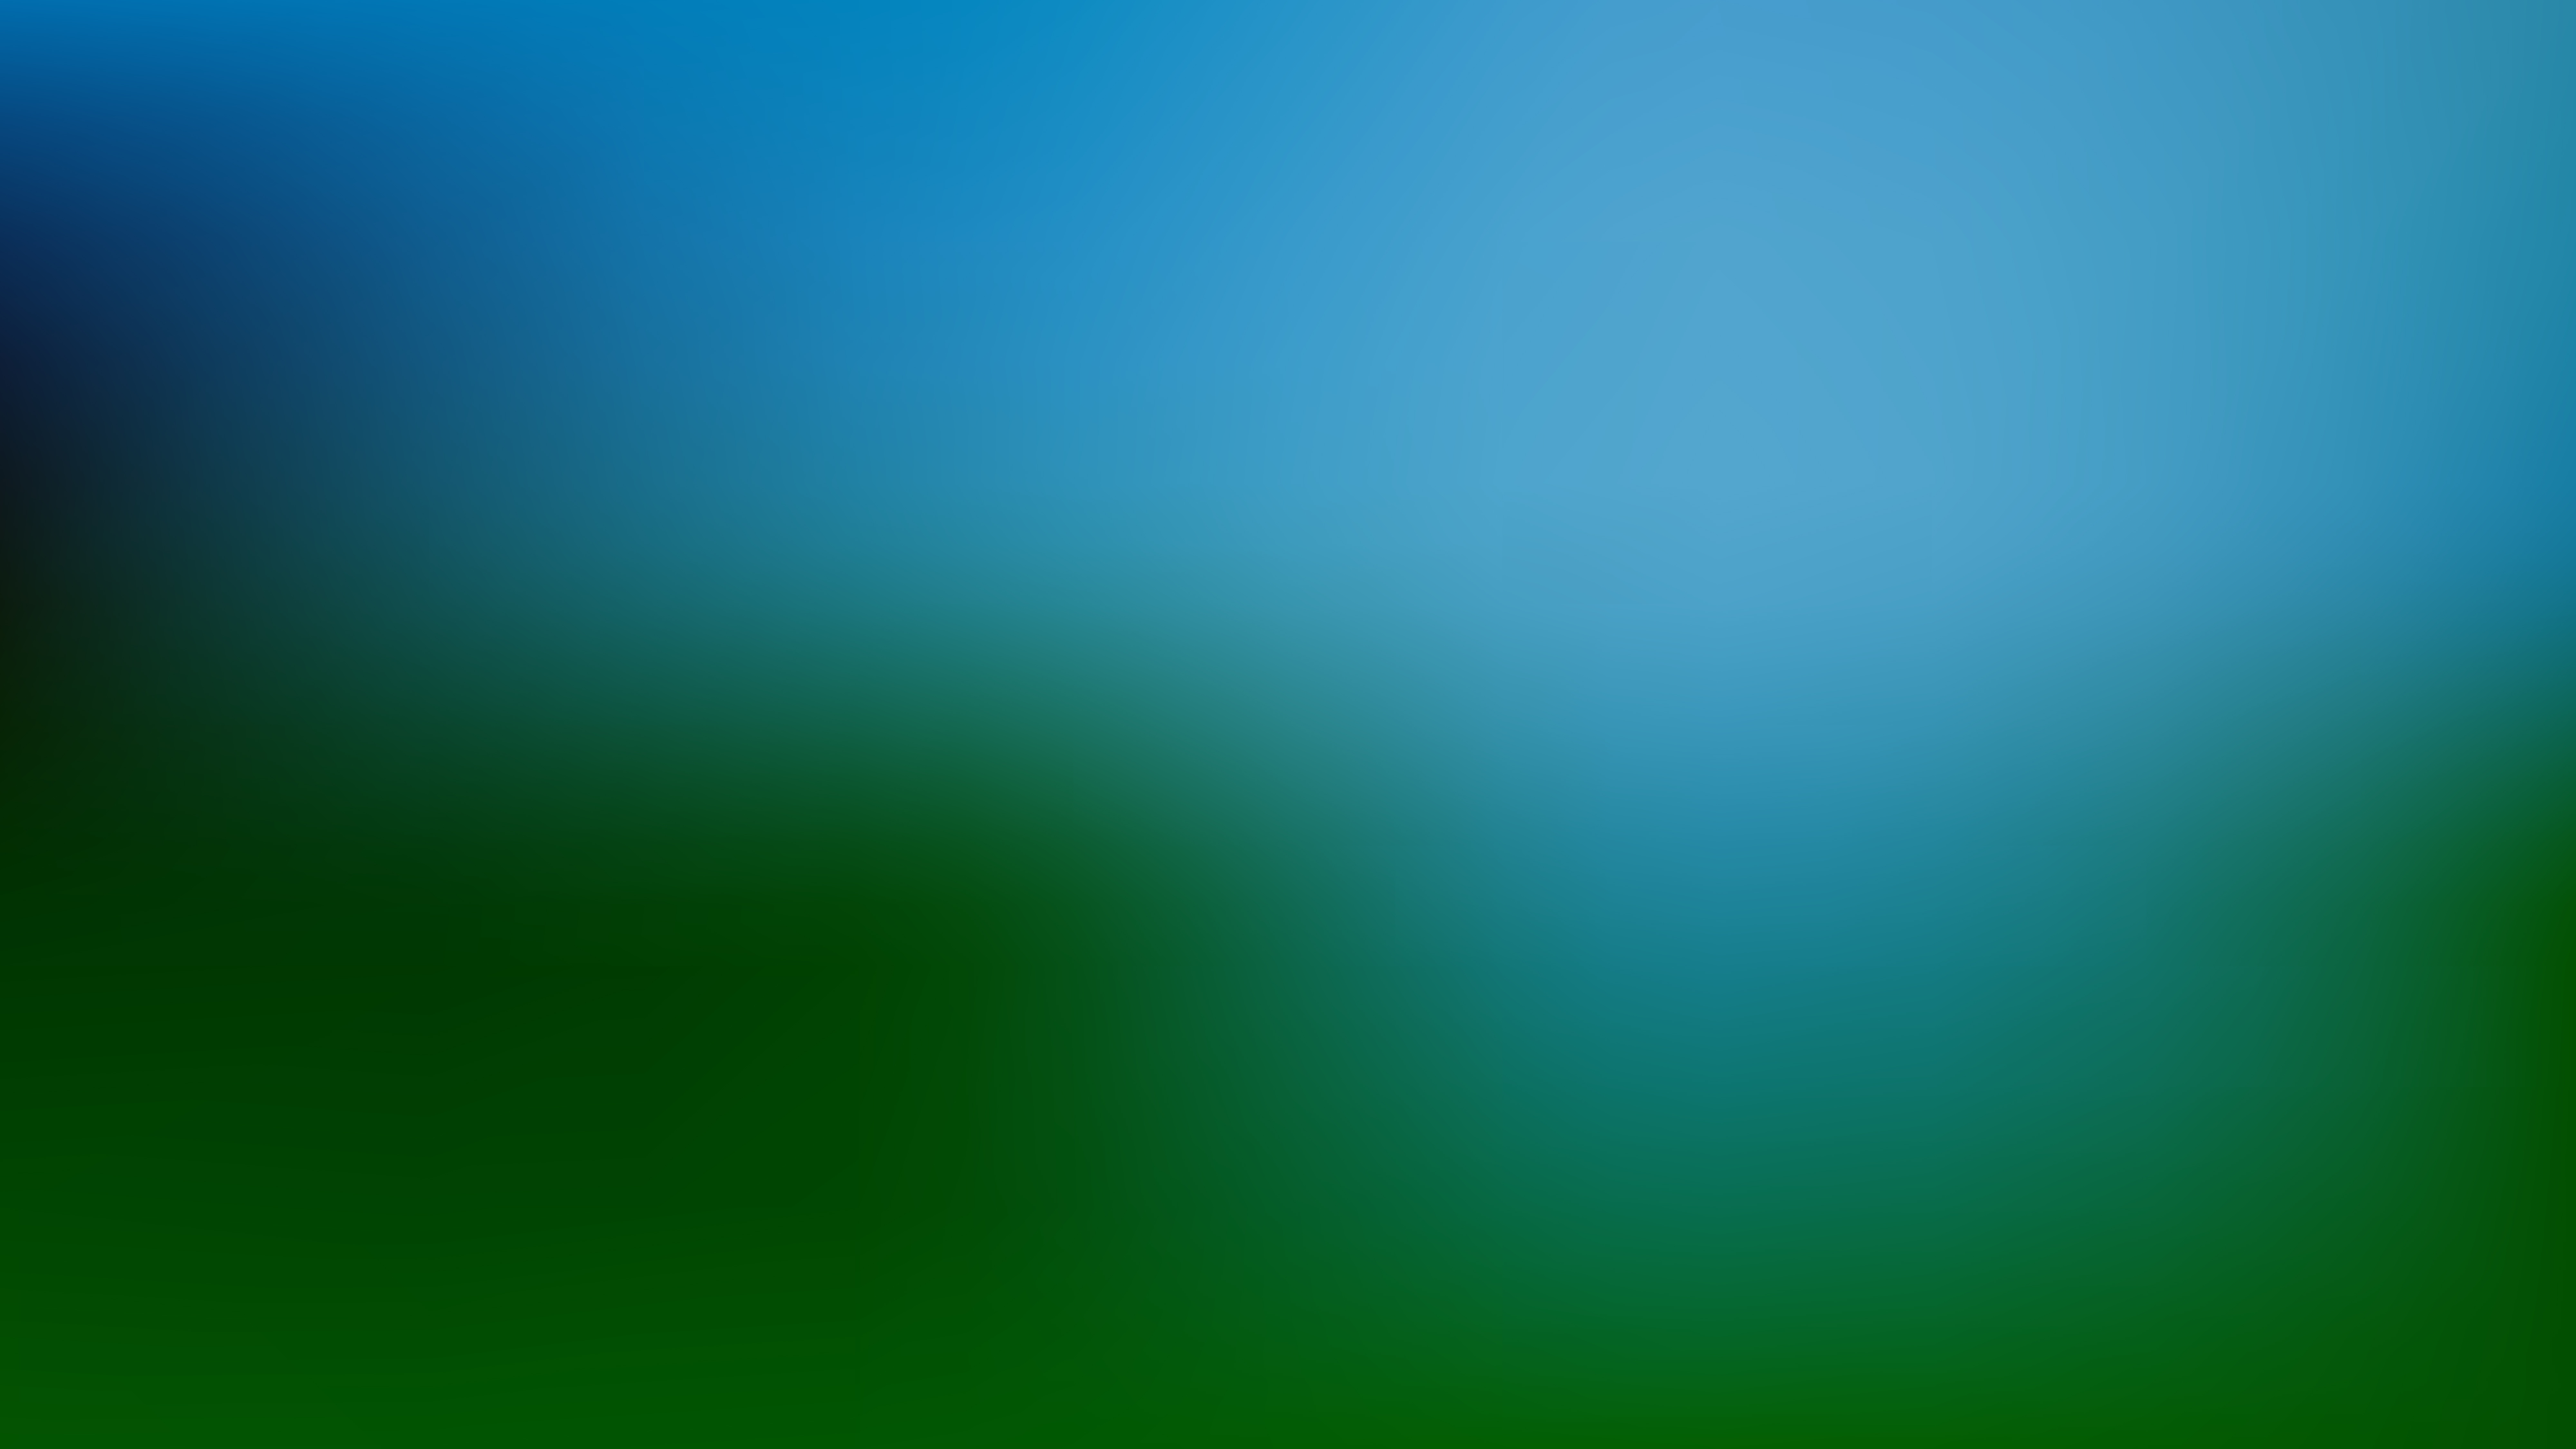 desenfoque de fondo de pantalla,verde,azul,agua,turquesa,verde azulado